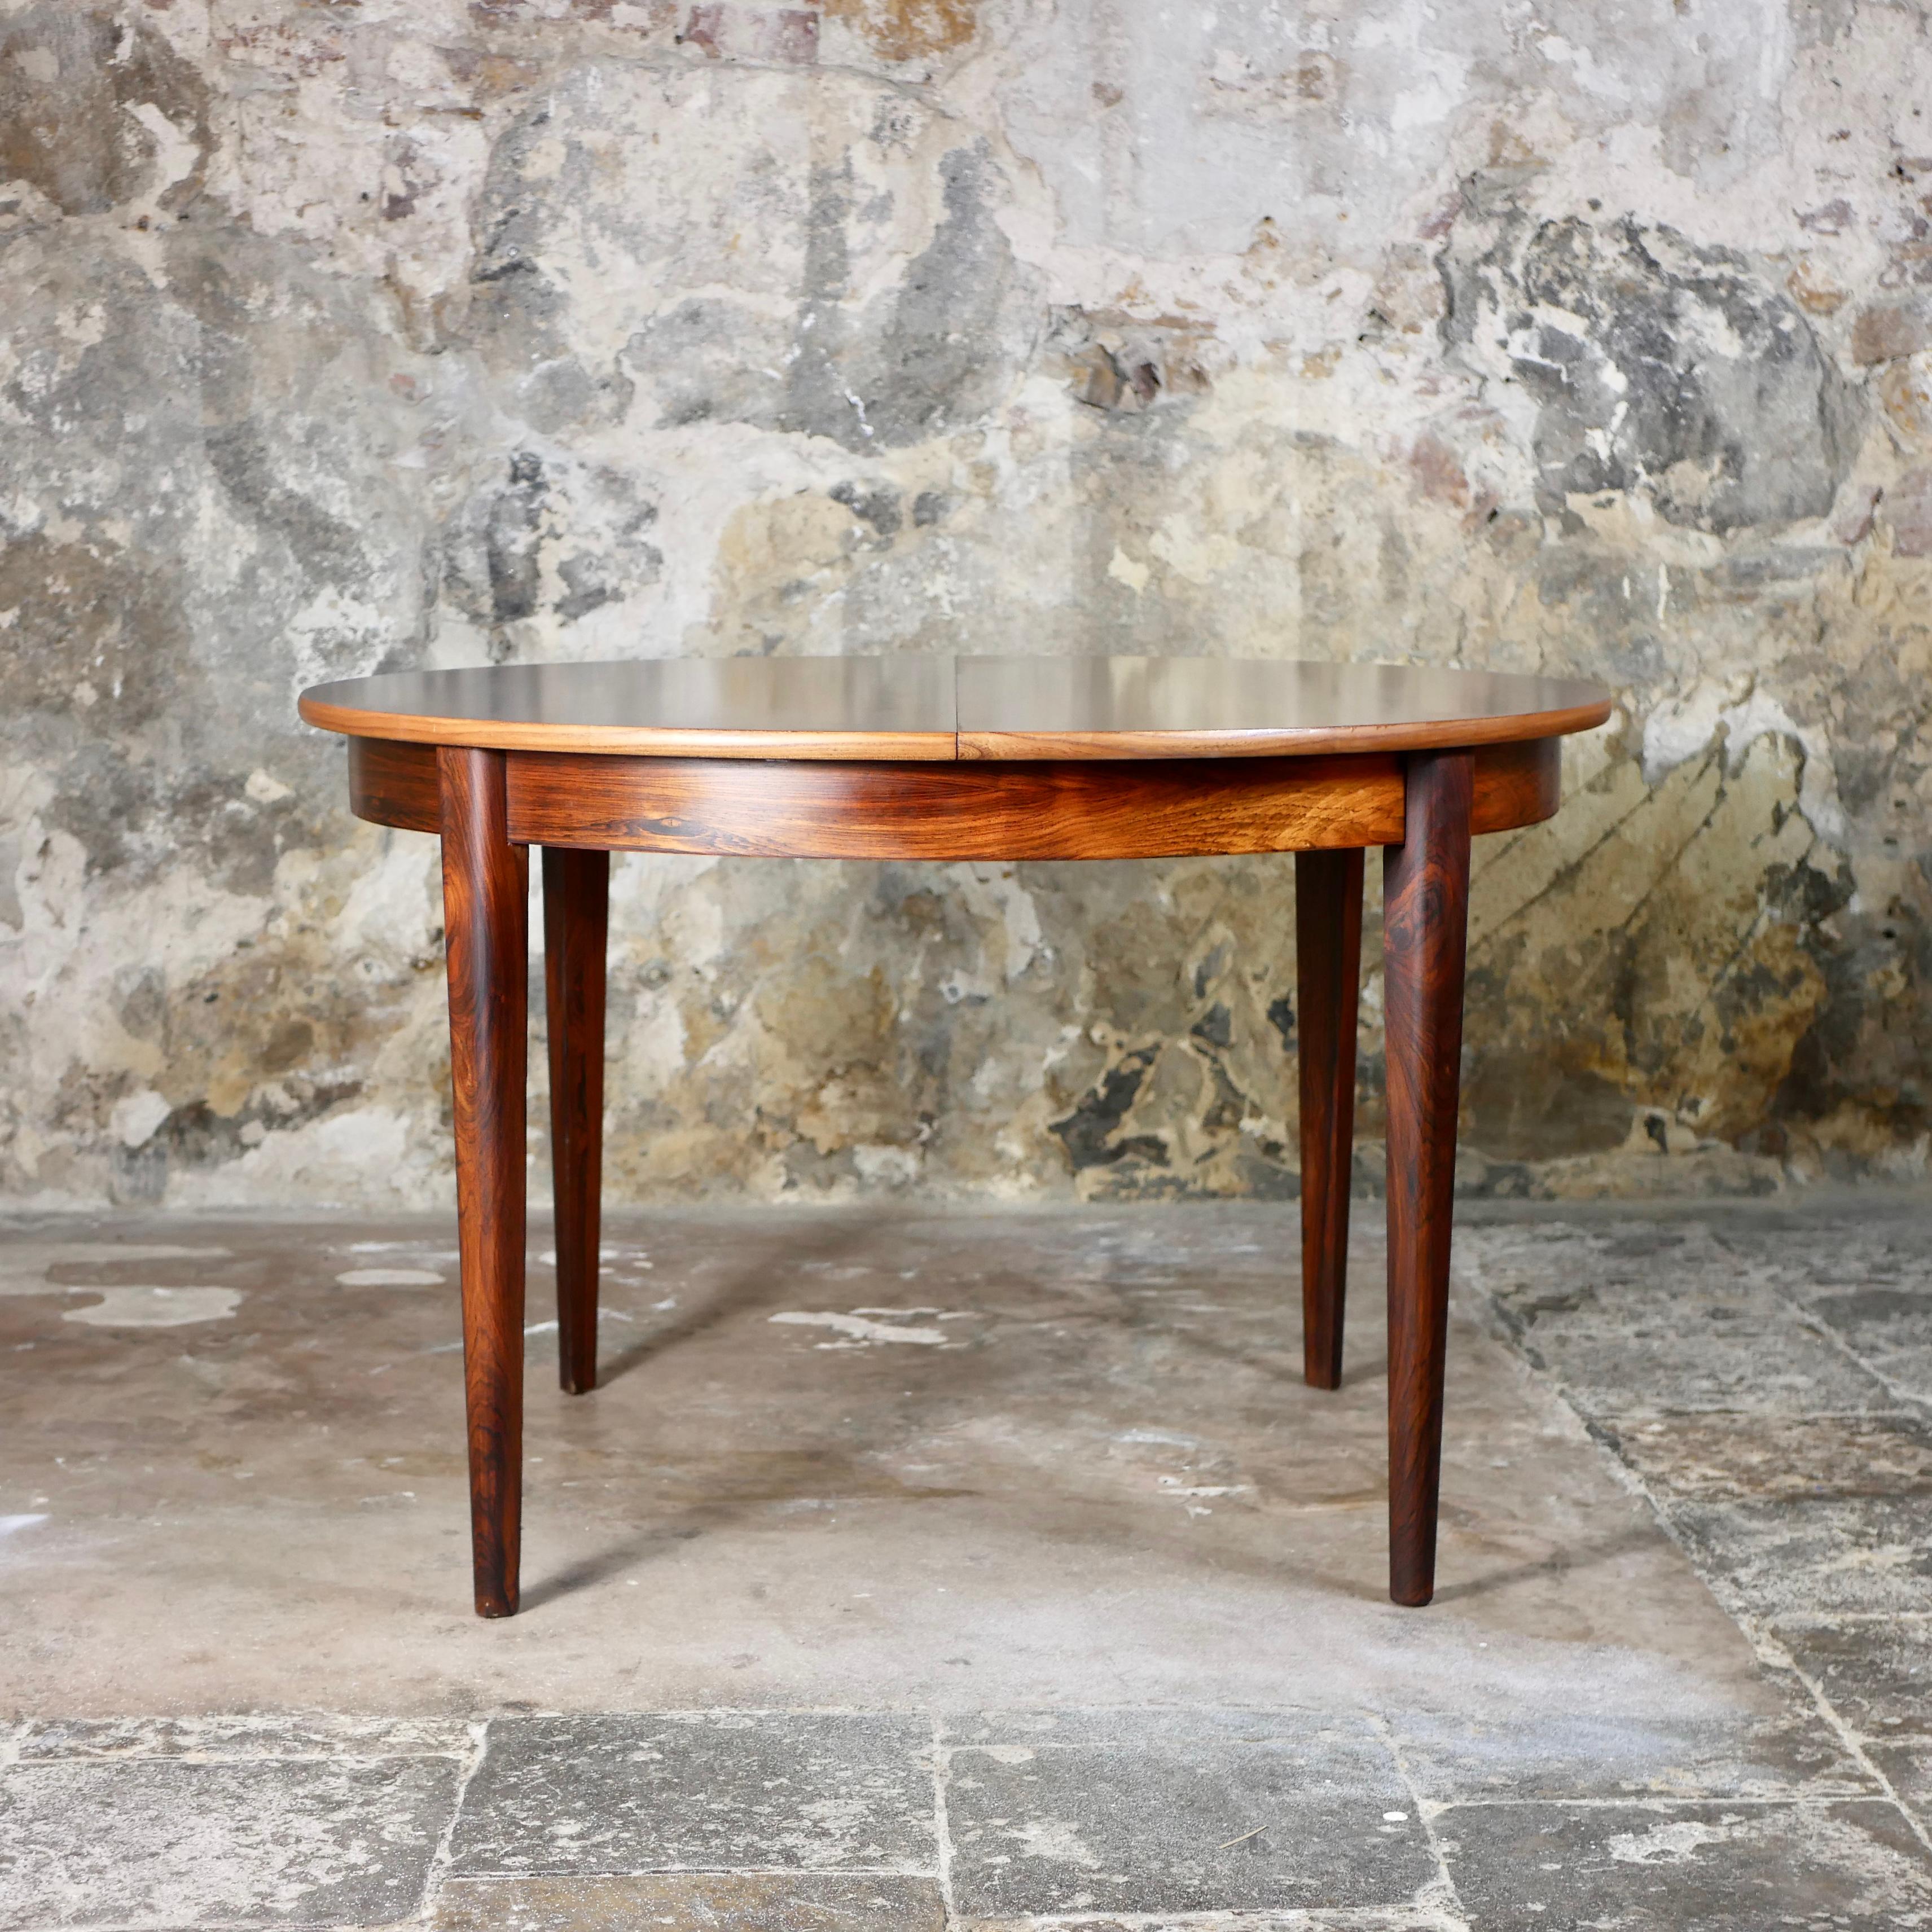 Magnifique table de style scandinave fabriquée en France dans les années 1960.
Extension papillon, pour 4 à 6 personnes.
Magnifique grain de bois, tons chauds.
Dessus verni, très bon état général.
Dimensions : H75cm, D118cm, L118-160cm